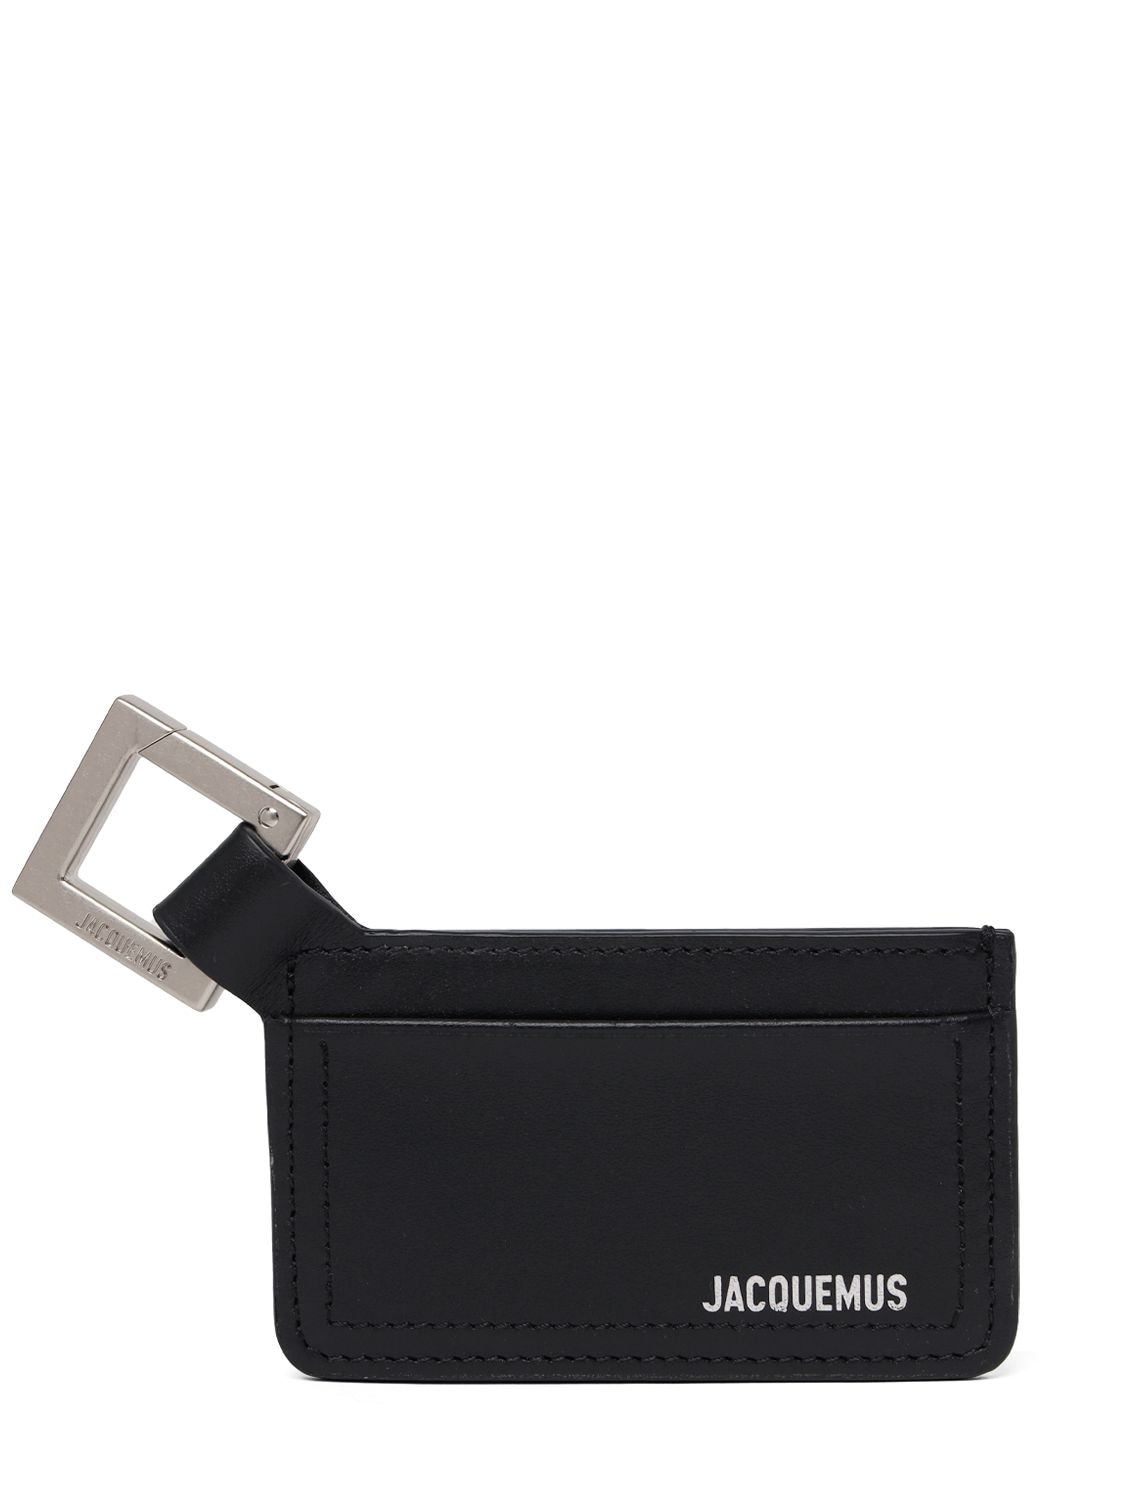 Jacquemus Le Porte-cartes Cuerda皮革钱包 In Black